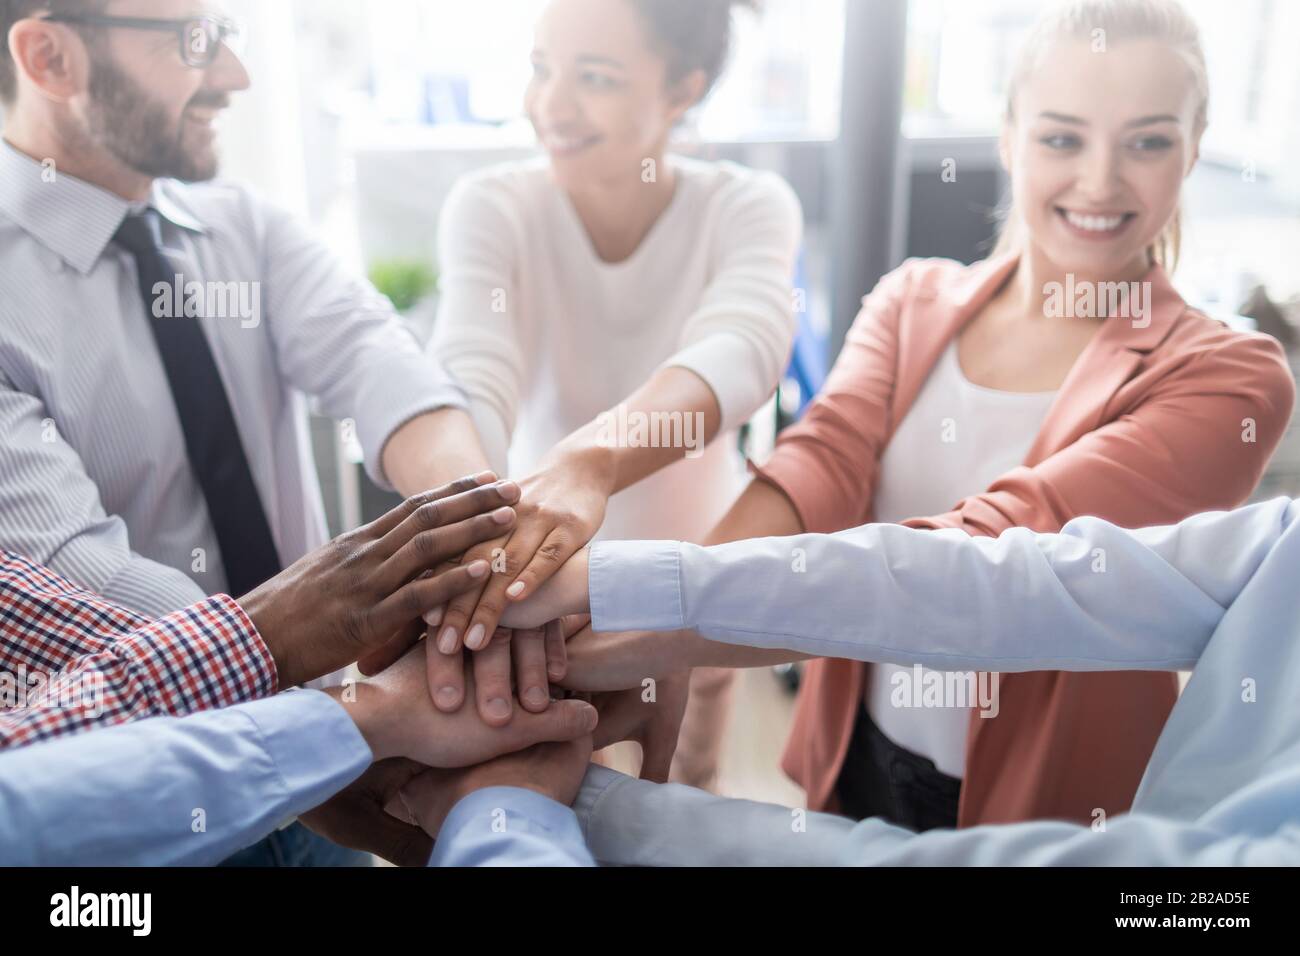 Nahaufnahme der jungen Geschäftsleute, die ihre Hände zusammenlegen. Handstapel. Einigkeit und Teamarbeit. Stockfoto